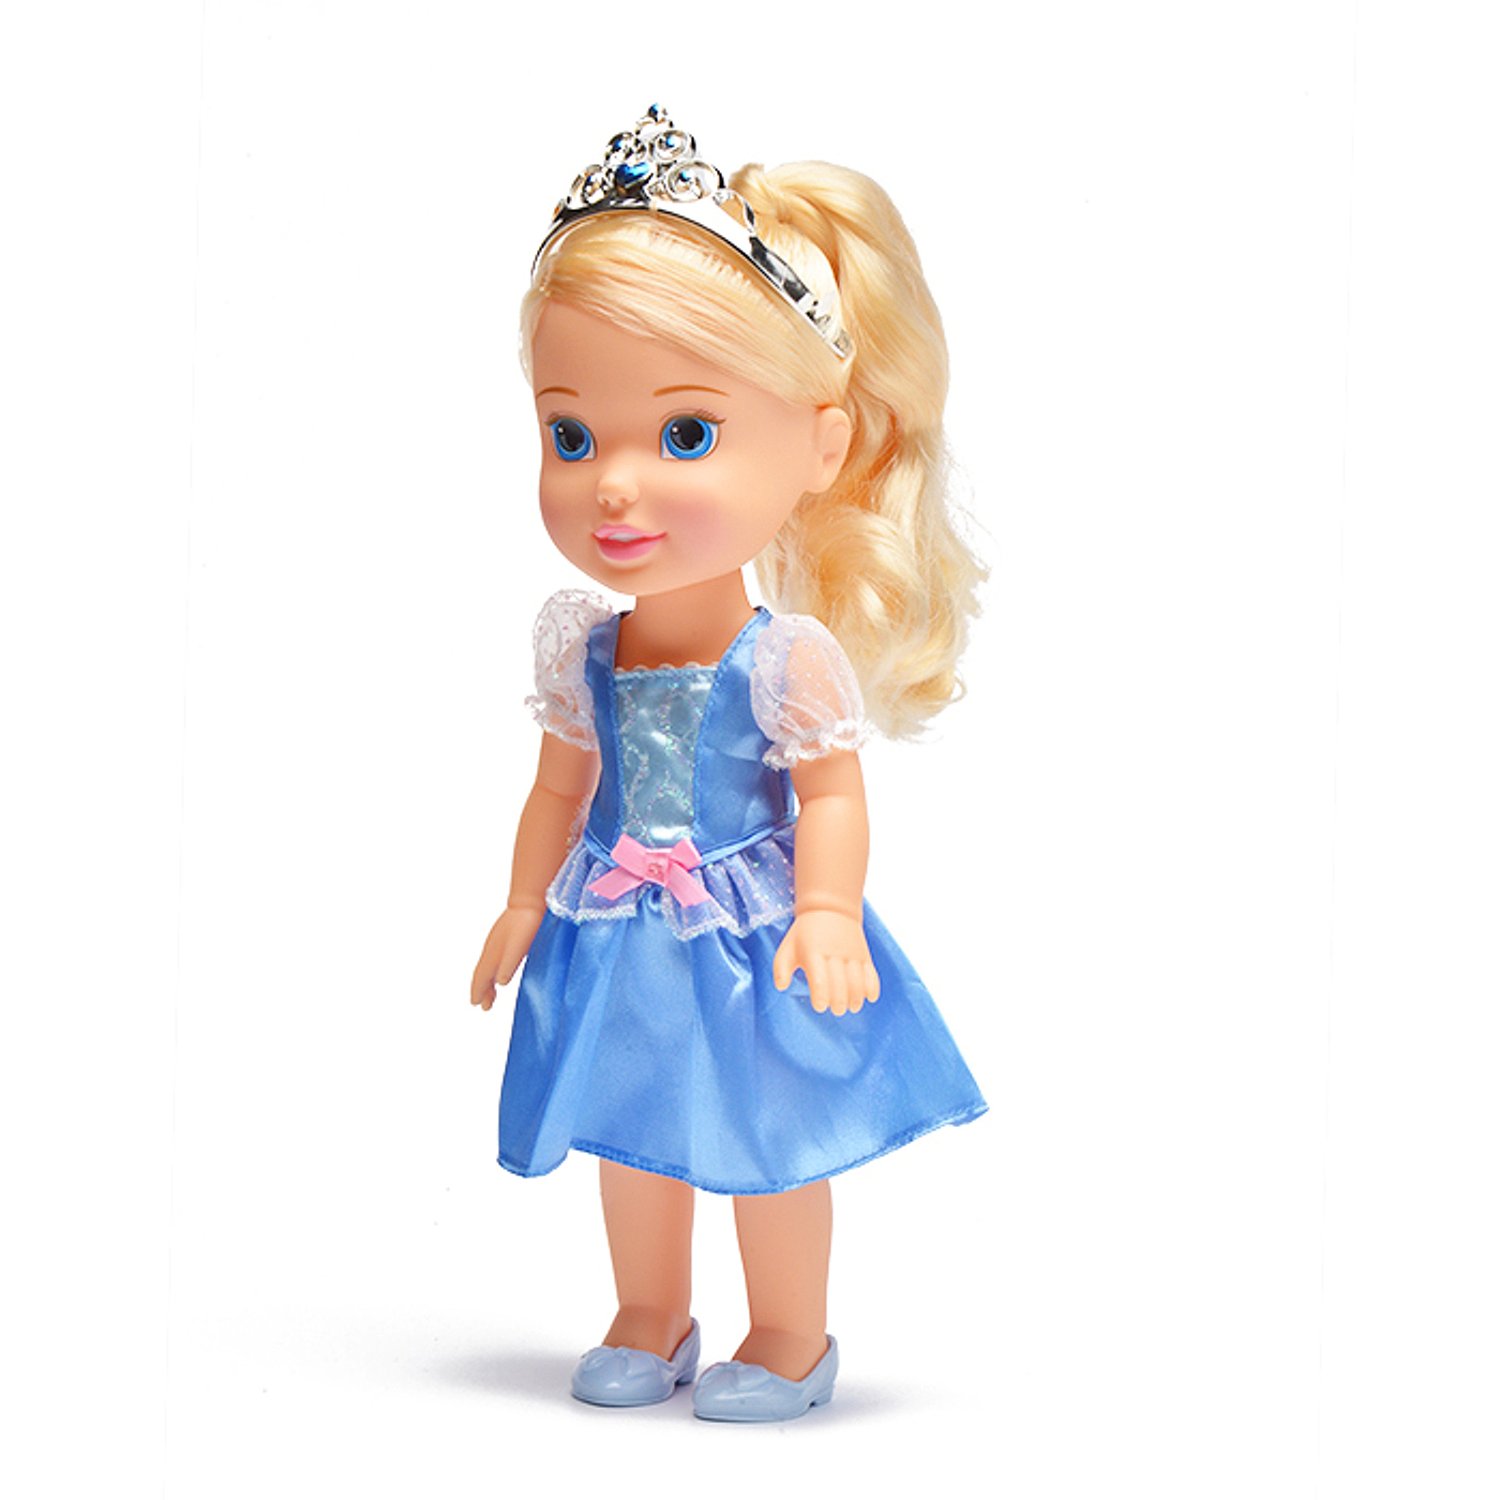 Принцесса малышка s класса. Куклы Дисней принцессы малышки. Кукла Золушка Дисней. Кукла малышка принцесса Дисней. Кукла 31 см принцессы Дисней малышка с украшениями, 791820.